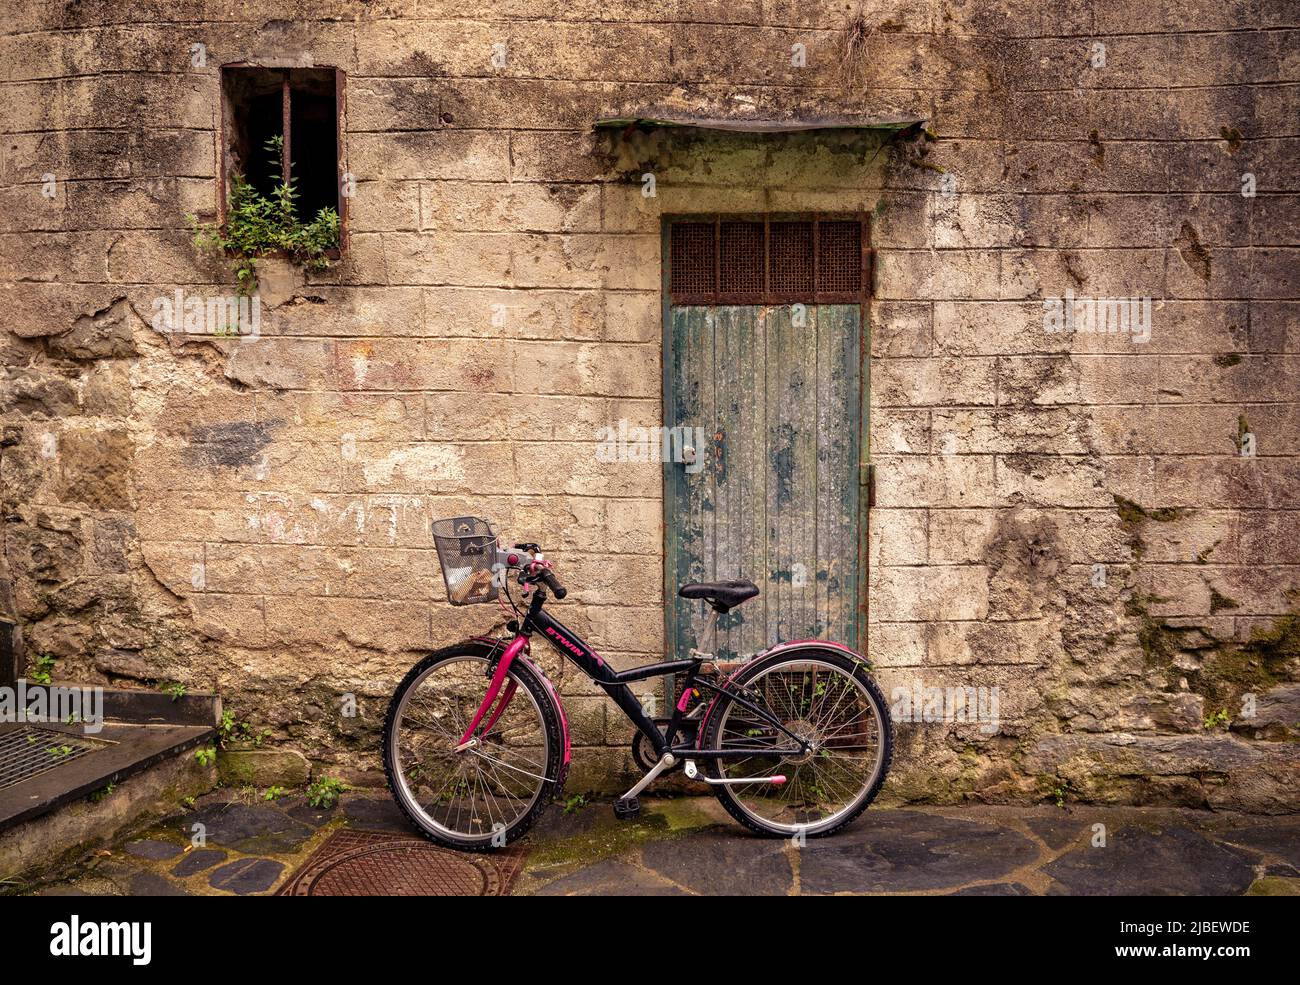 Bicicletta di fronte alla porta intemperie delle cinque Terre, che consiste di cinque bei villaggi sul mare collegati da sentieri escursionistici sulla scogliera Foto Stock